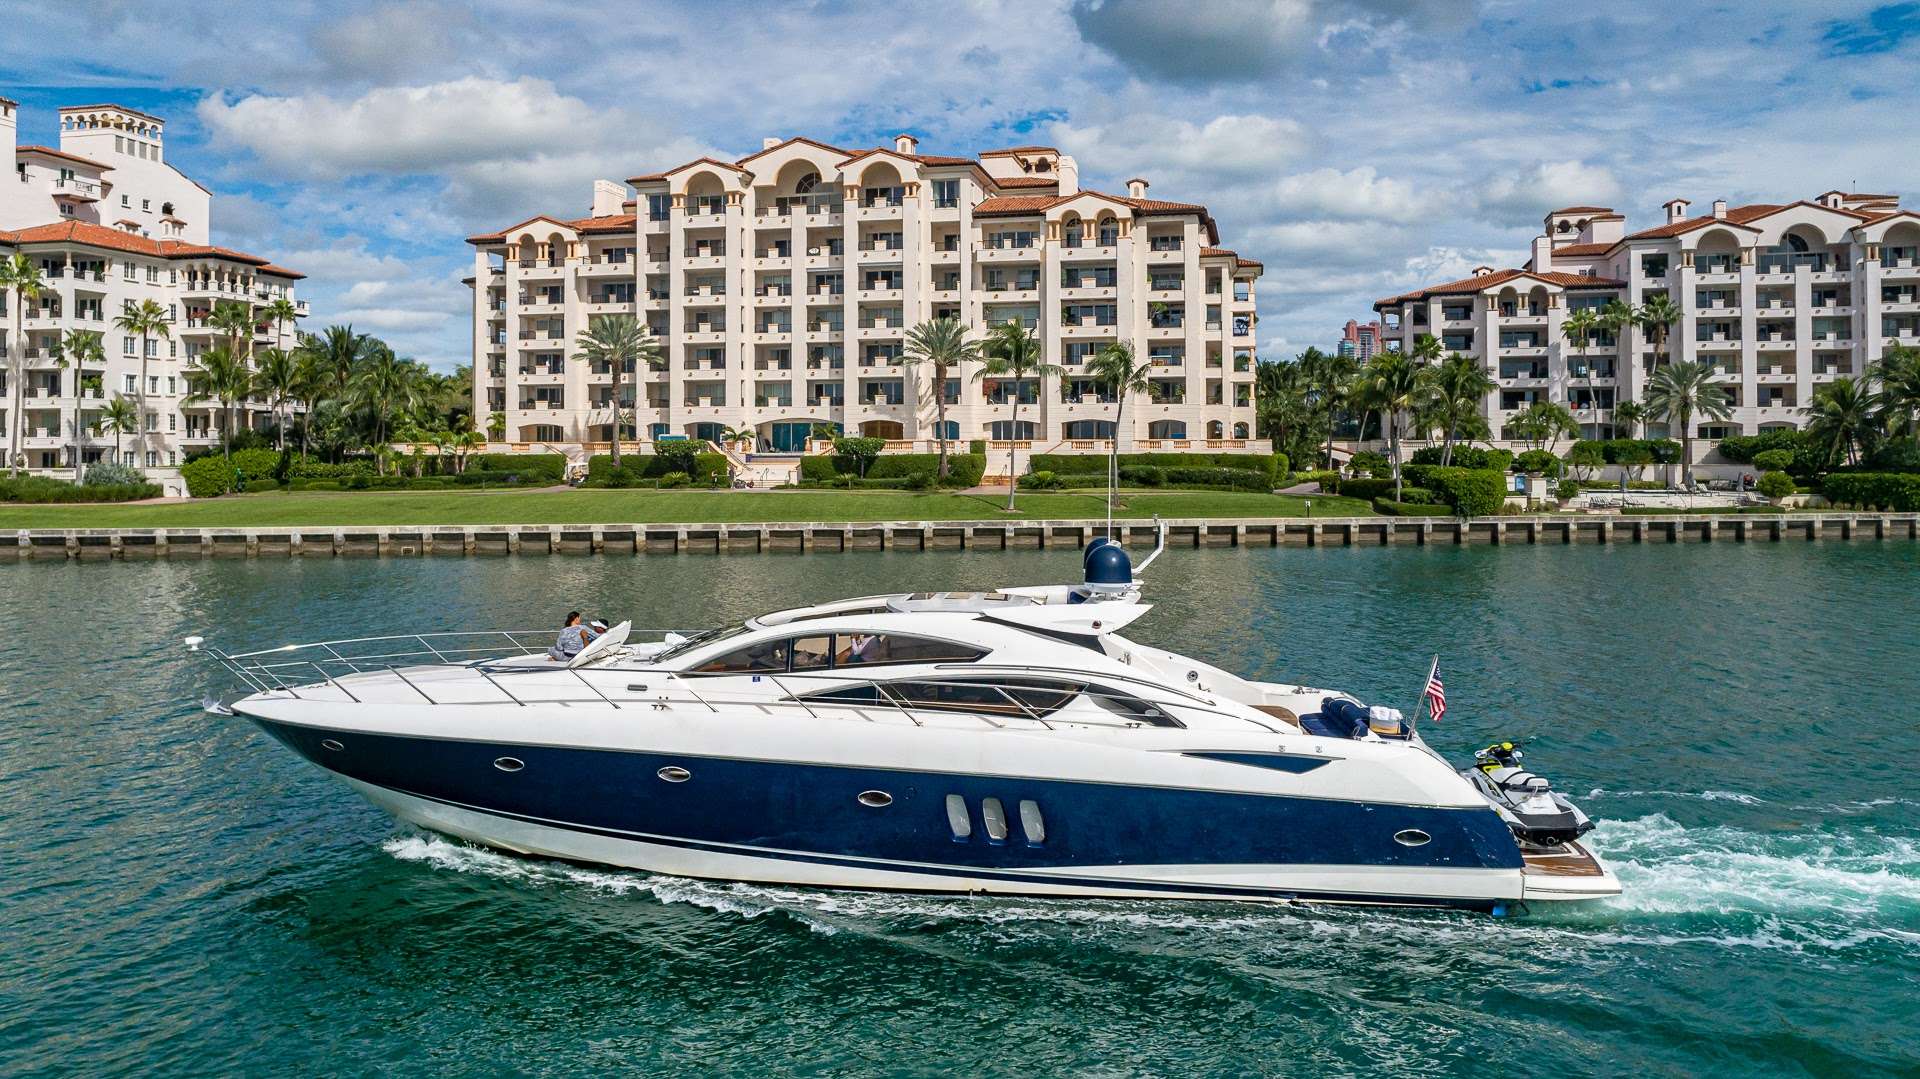 Yacht 75 - Luxury yacht charter Bahamas & Boat hire in Bahamas New Providence Nassau Palm Cay One Marina 2